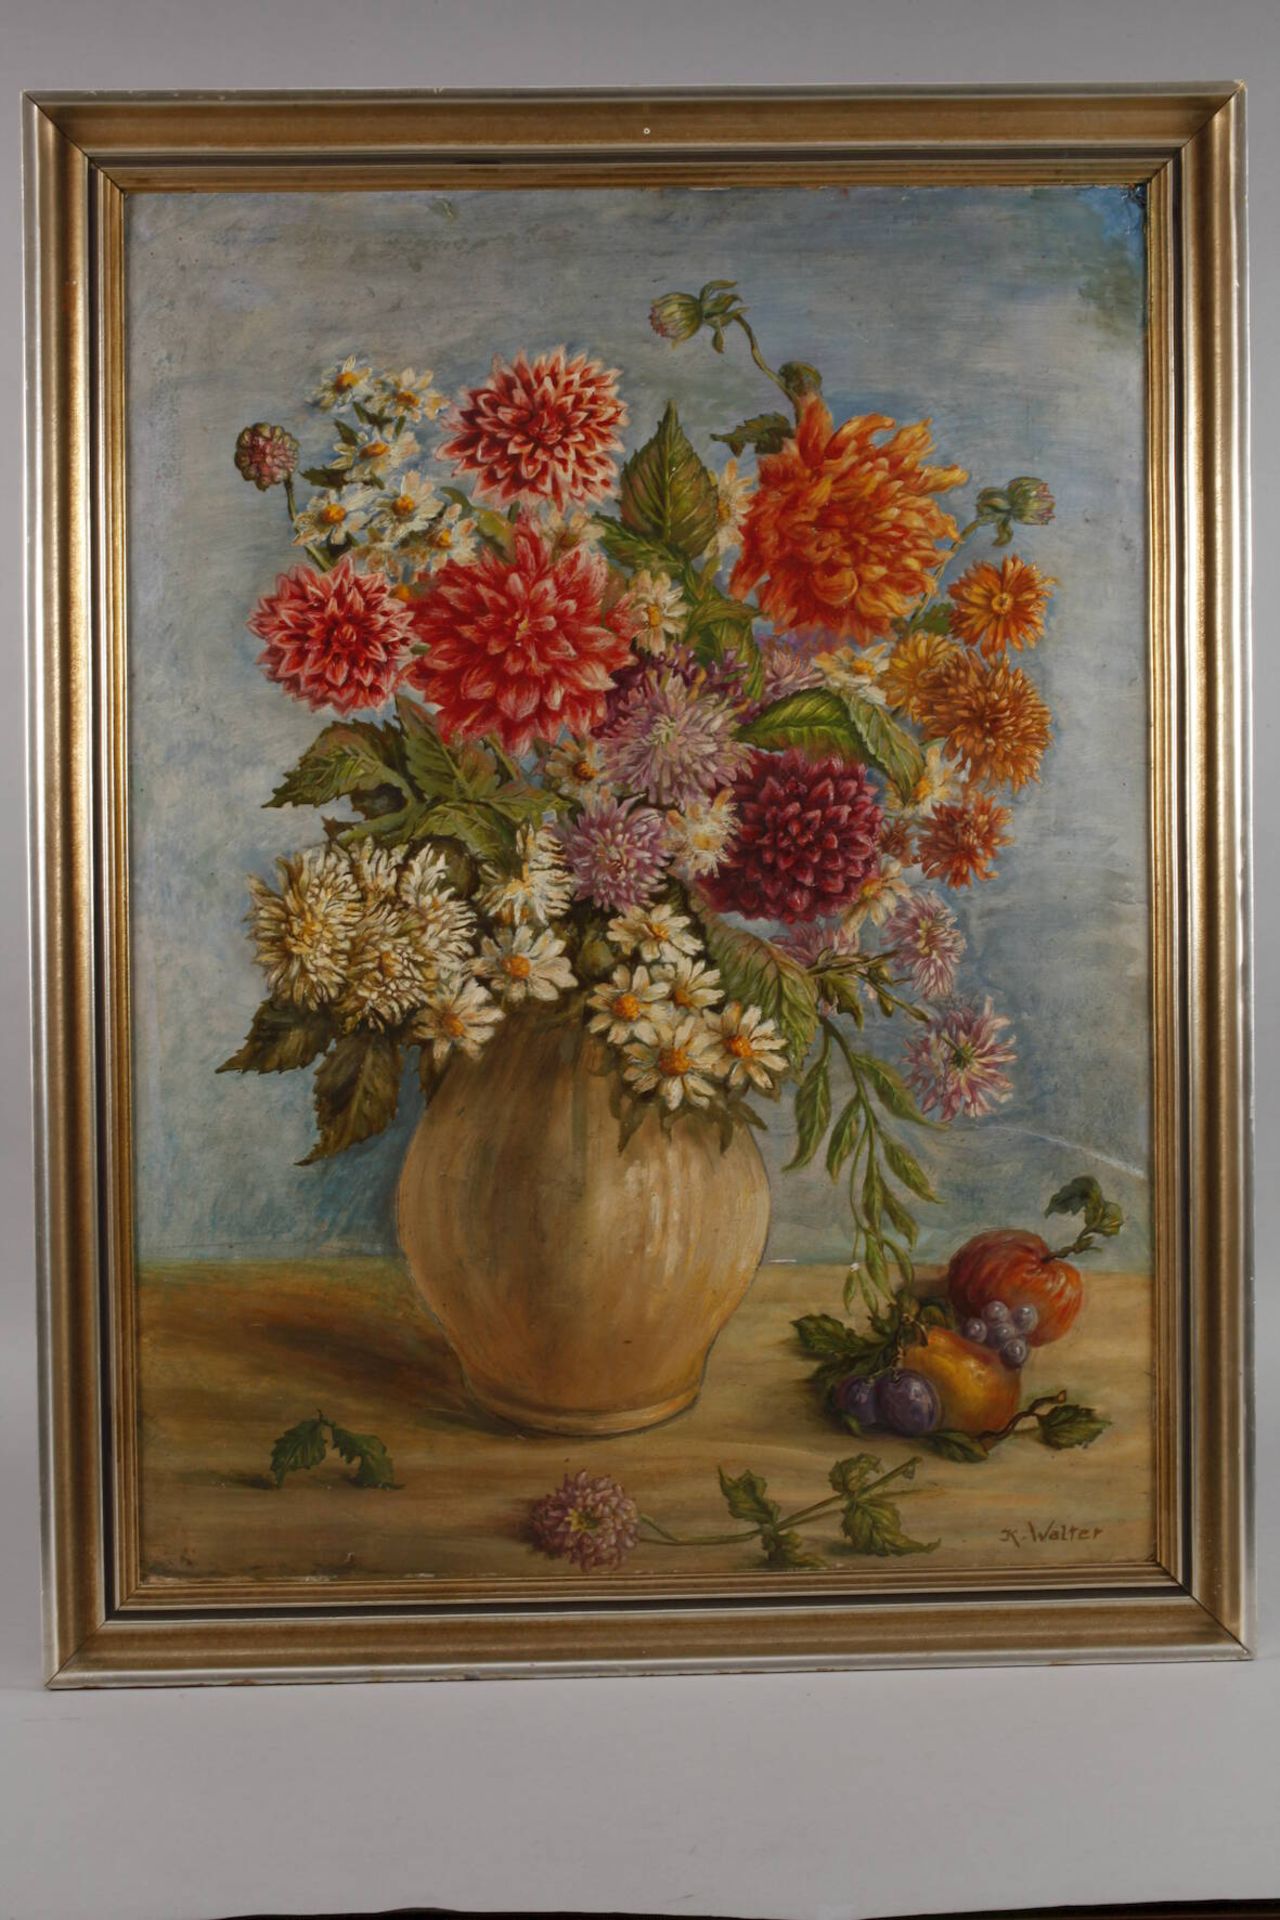 Karl Walter, Sommerblumen und Früchteneben einer Vase mit prächtigem Sommerblumenstrauß liegende - Bild 2 aus 4